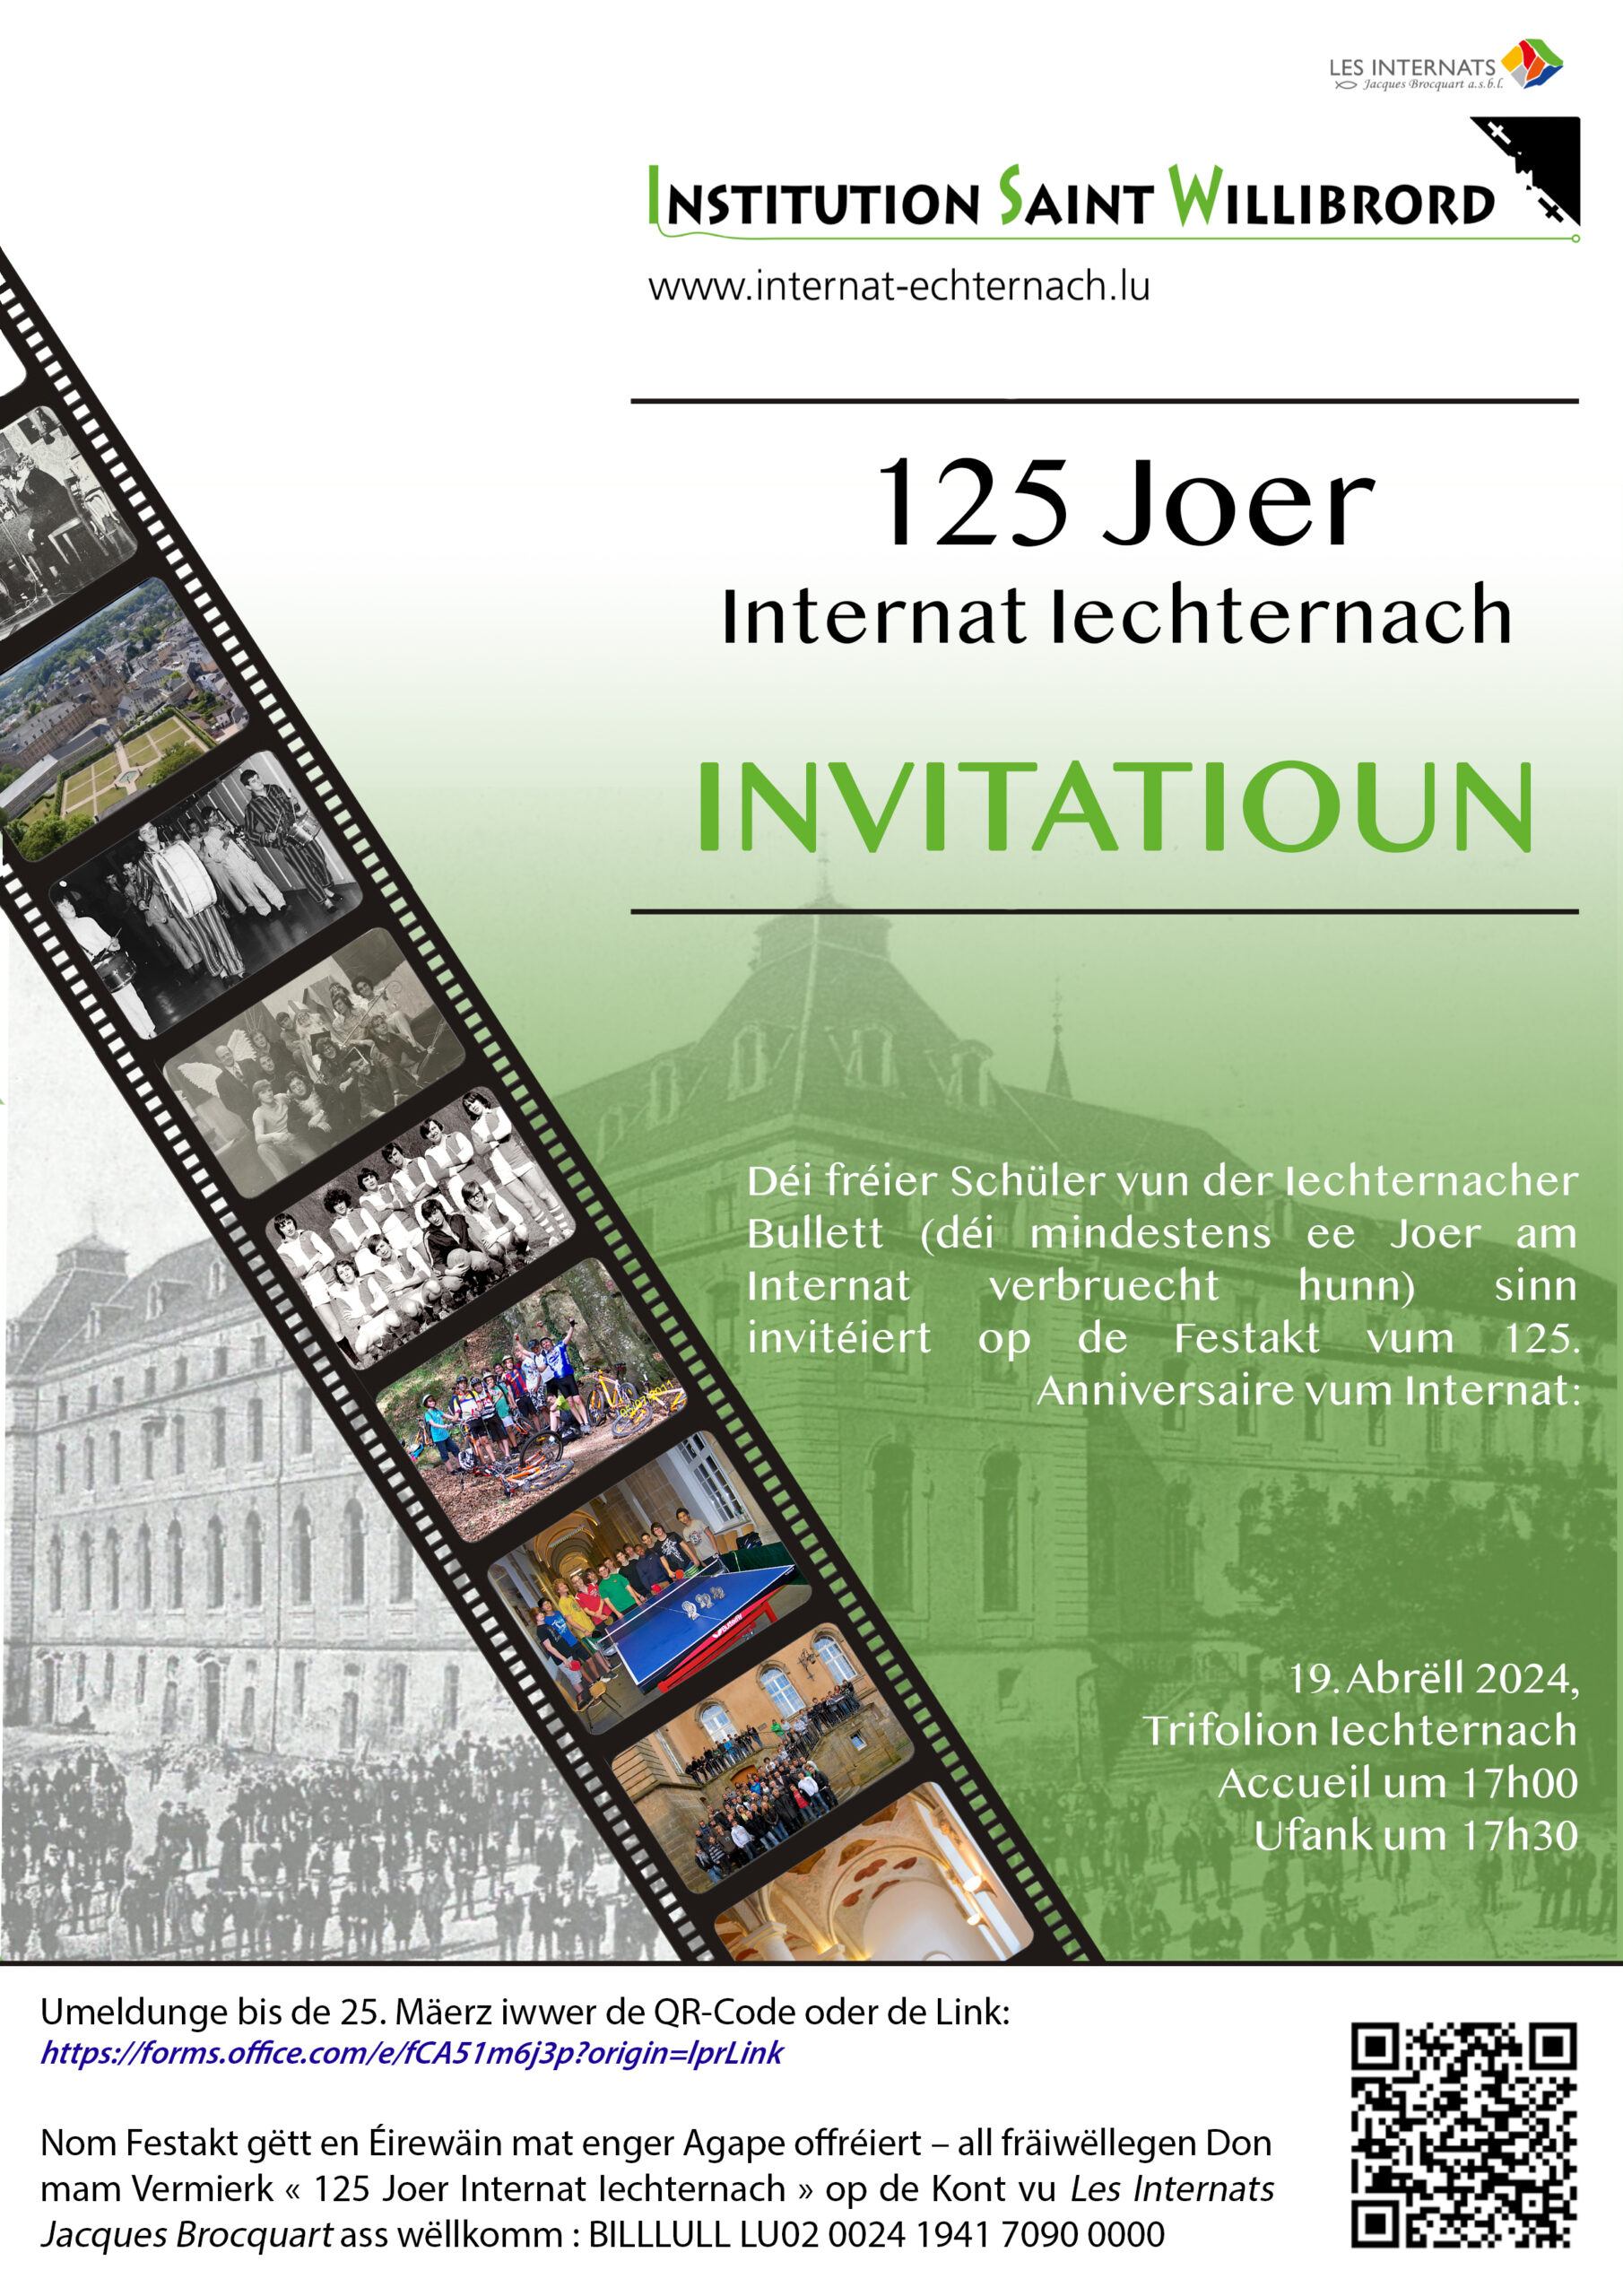 125 Joer ISW Echternach den 19.4.2024